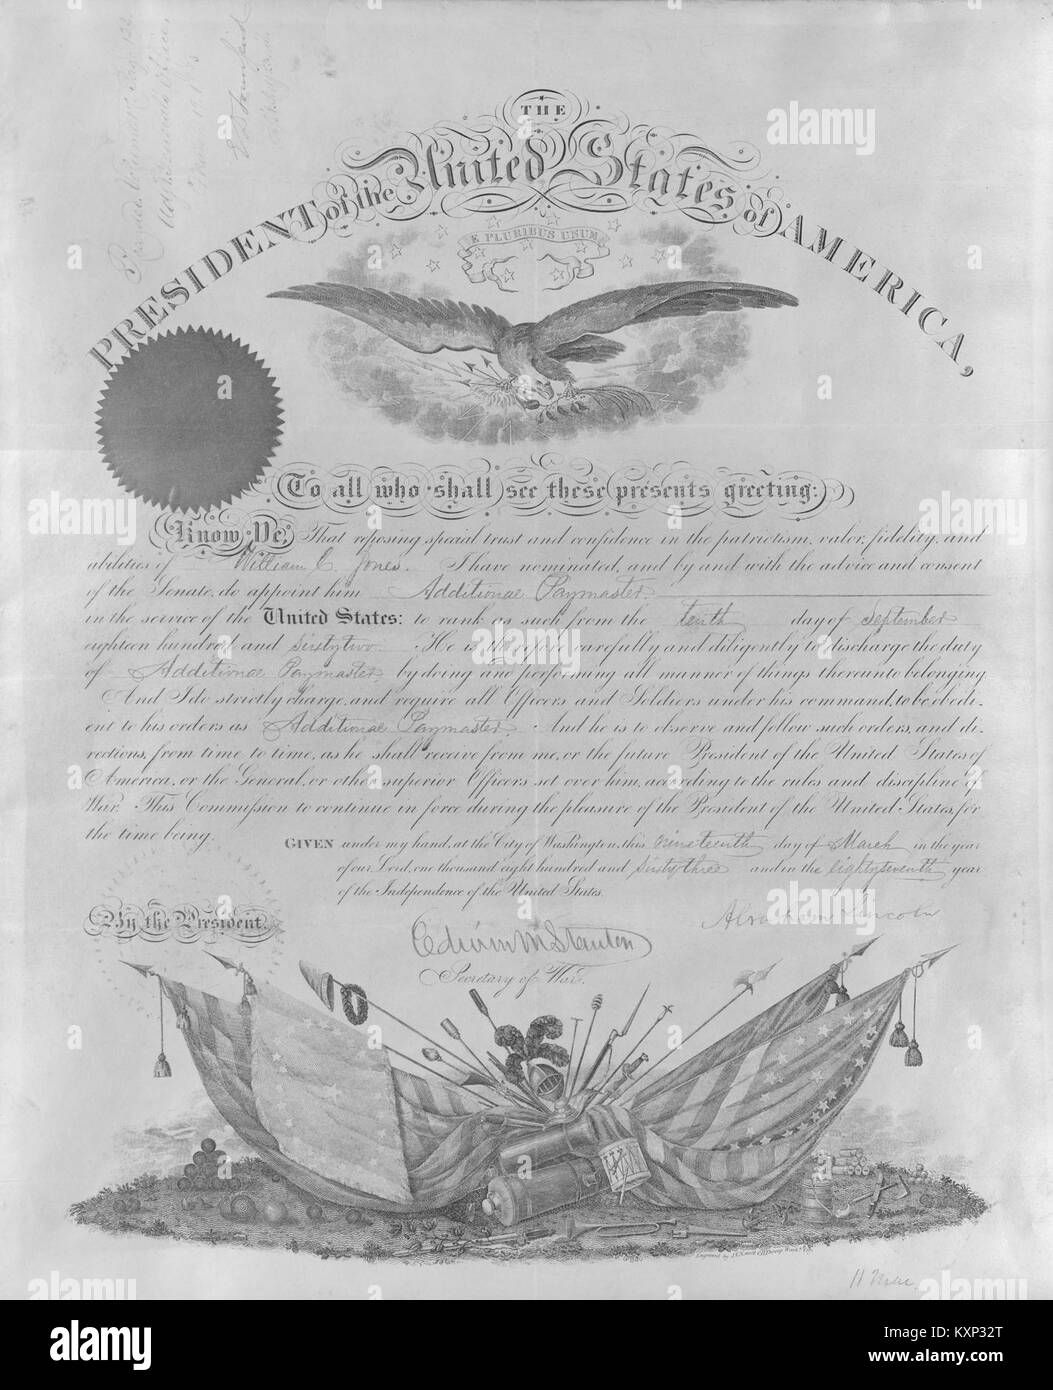 Kommission der William C. Jones aus der Präsident der Vereinigten Staaten von Amerika, 19. März 1863 Stockfoto